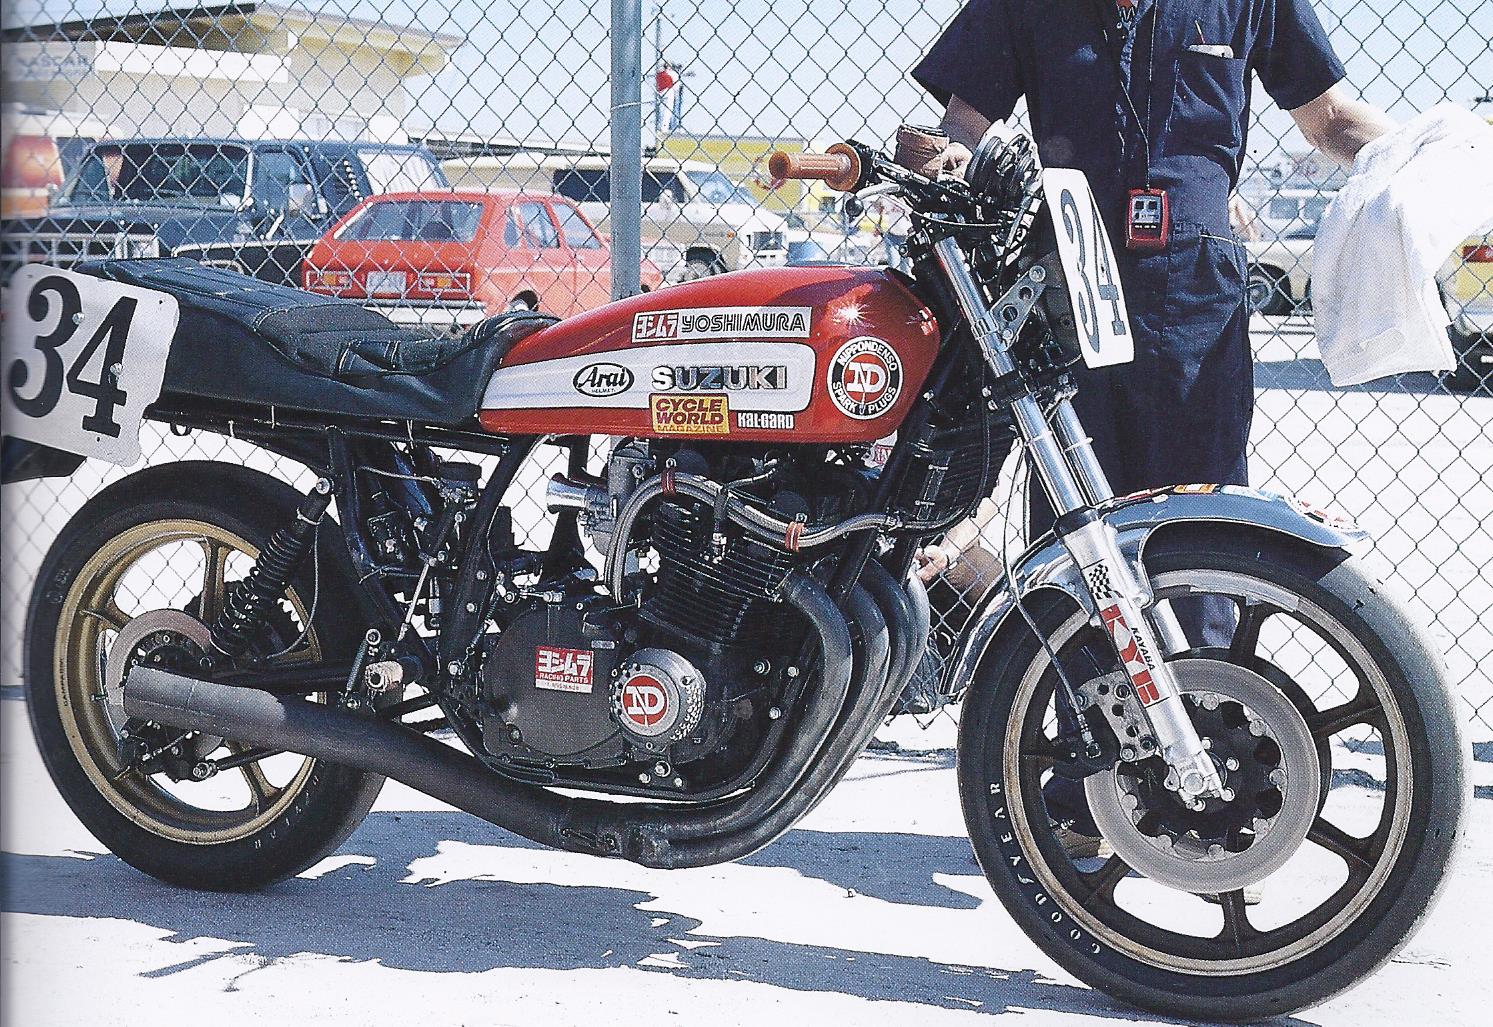 Suzuki 34 1979